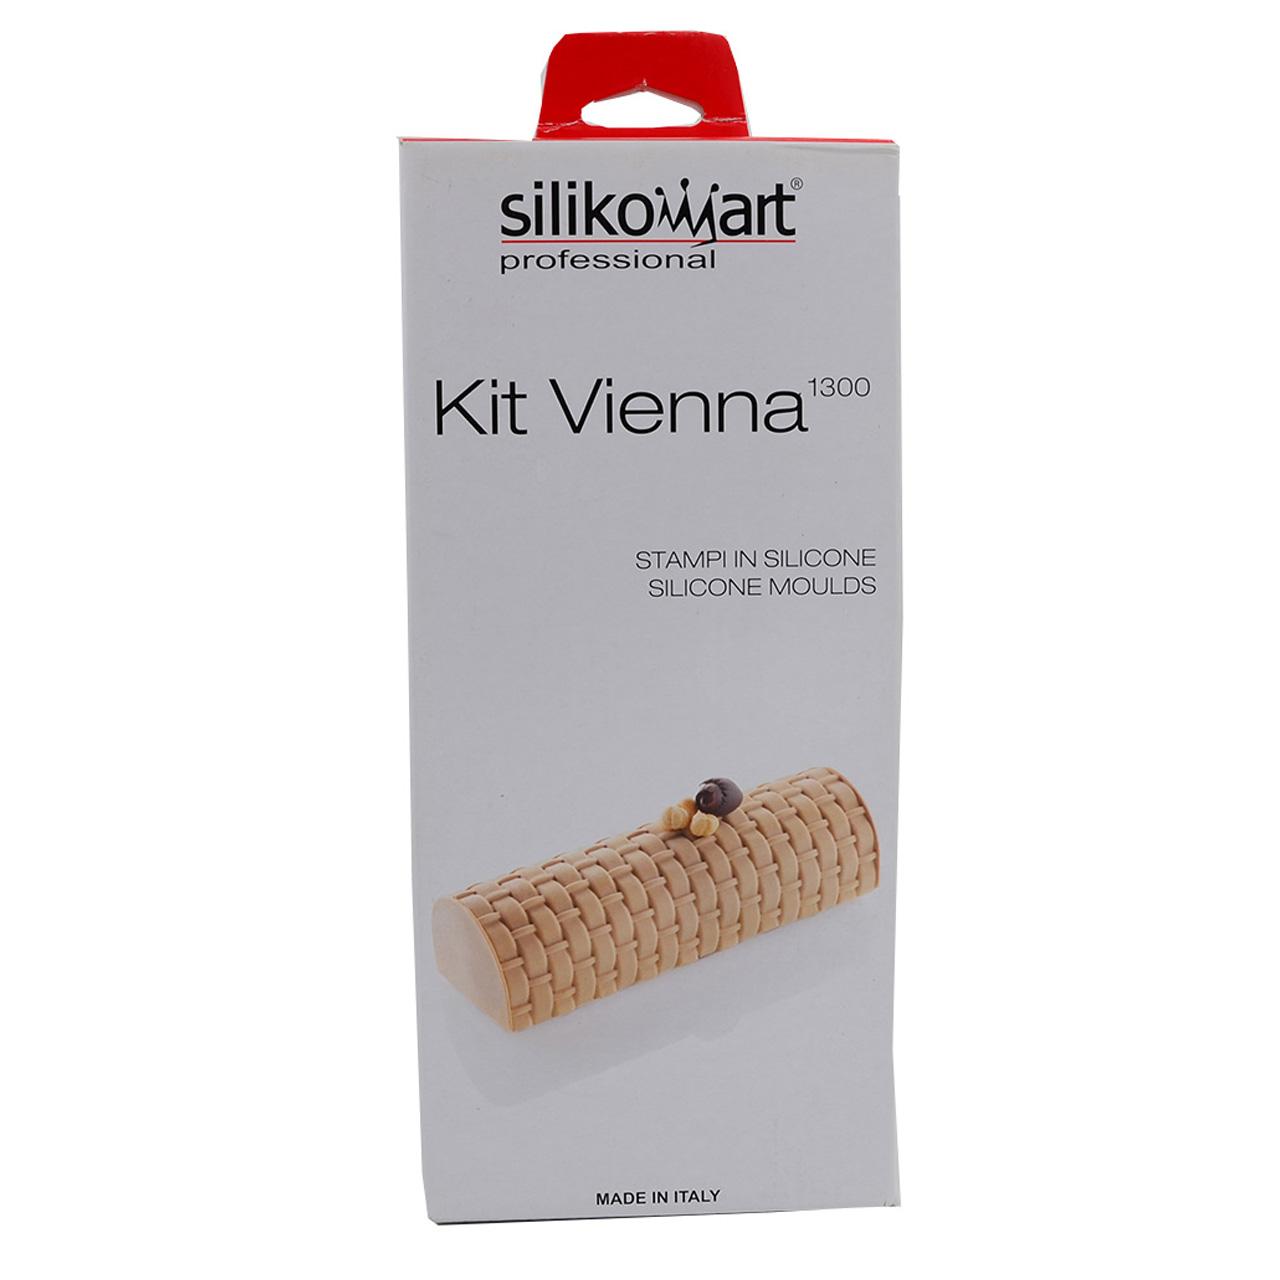 Silikomart Kit Vienna